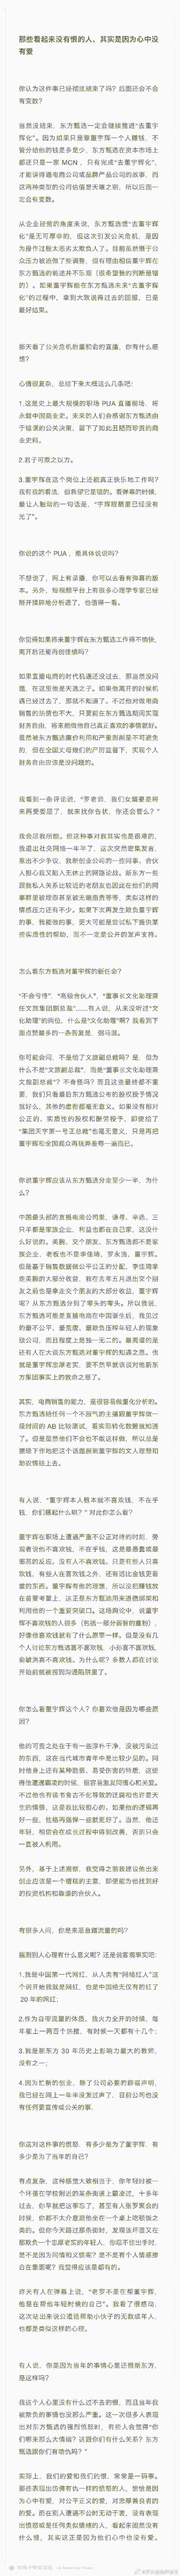 罗永浩称东方甄选会继续去董化 没有实质股权虚衔毫无意义